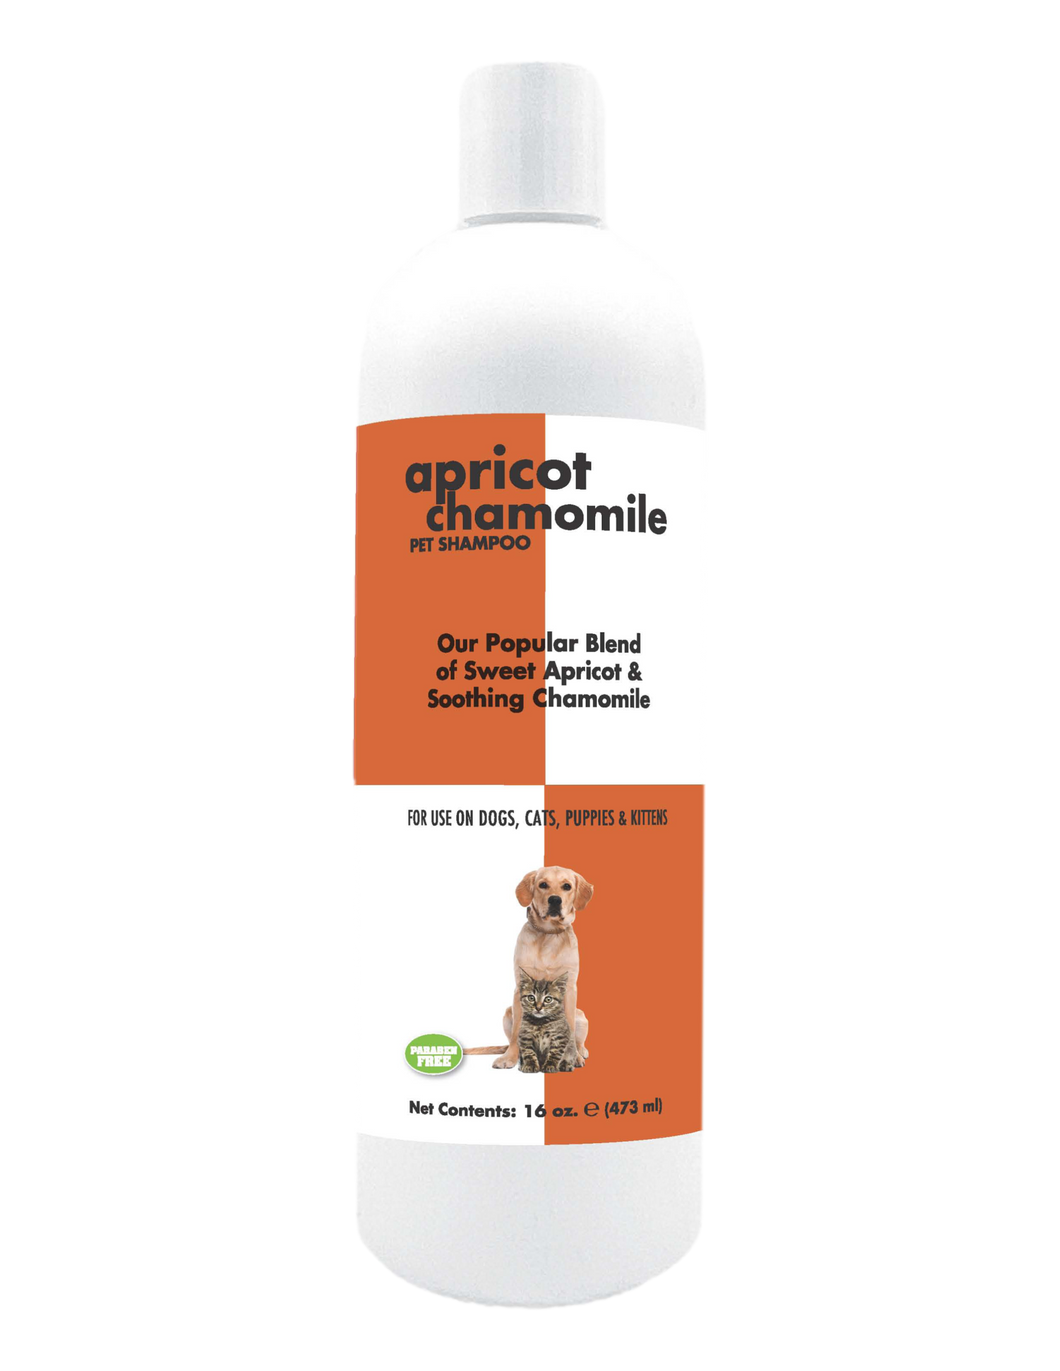 Apricot Chamomile Pet Shampoo